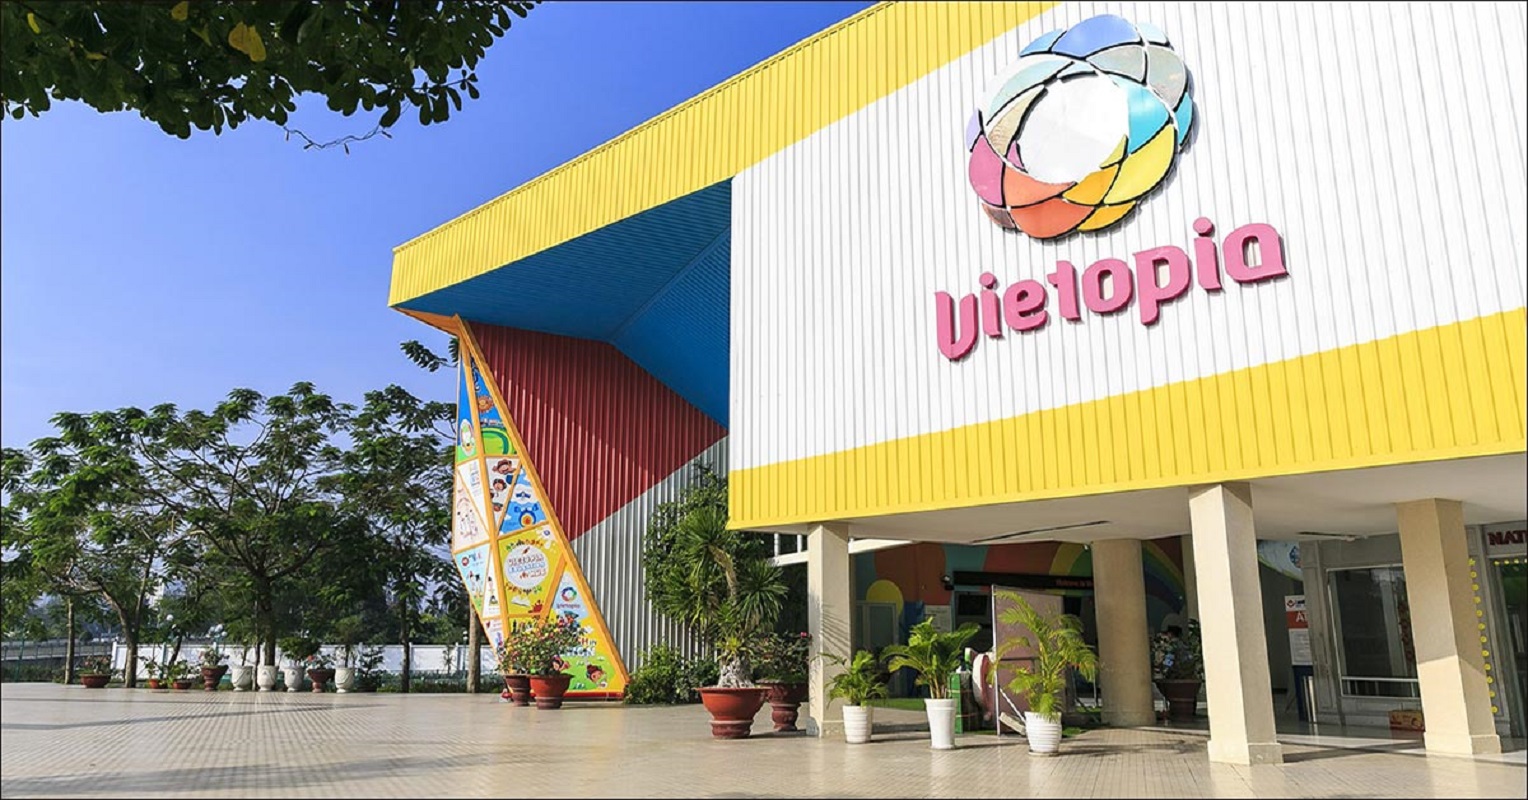 Vietopia, khu vui chơi cho trẻ nhỏ tại Sài Gòn